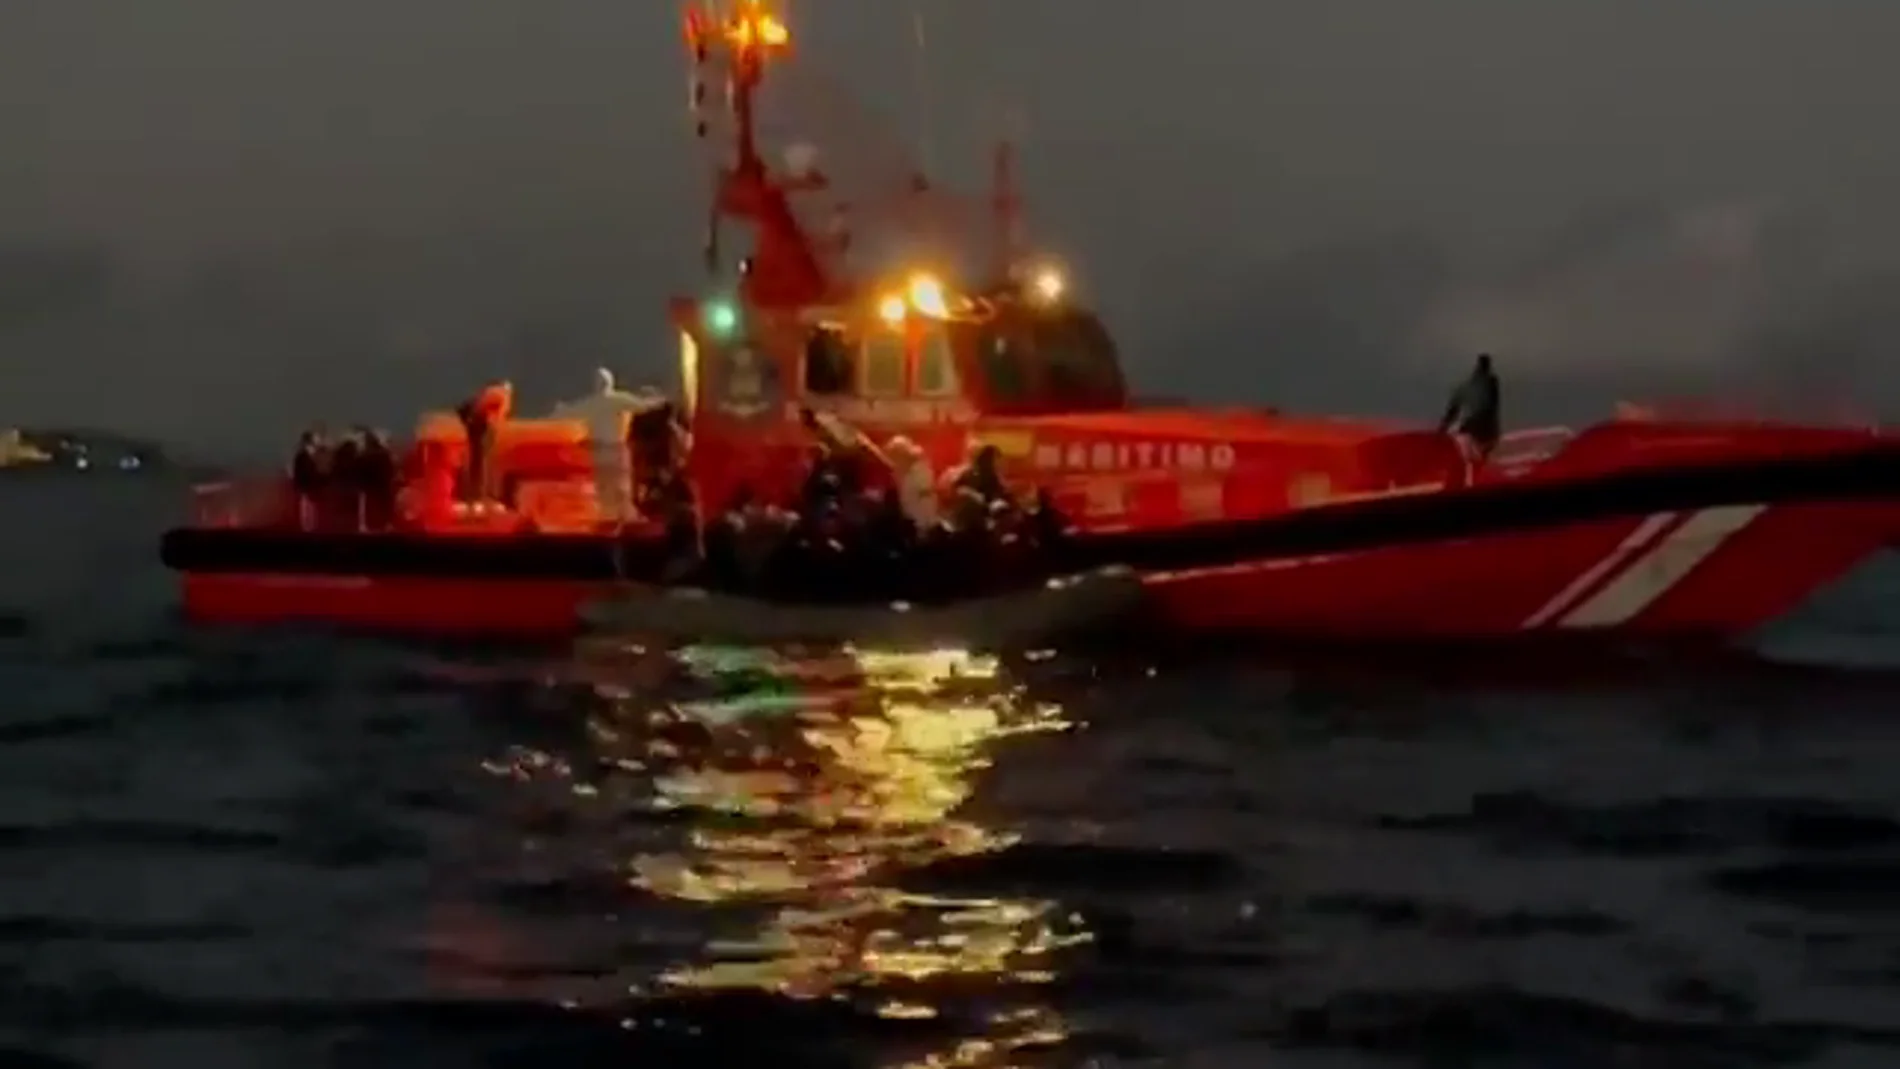 Llantos y gritos en medio de la oscuridad: así ha sido el rescate de una patera con tres niños a bordo al sur de Fuerteventura